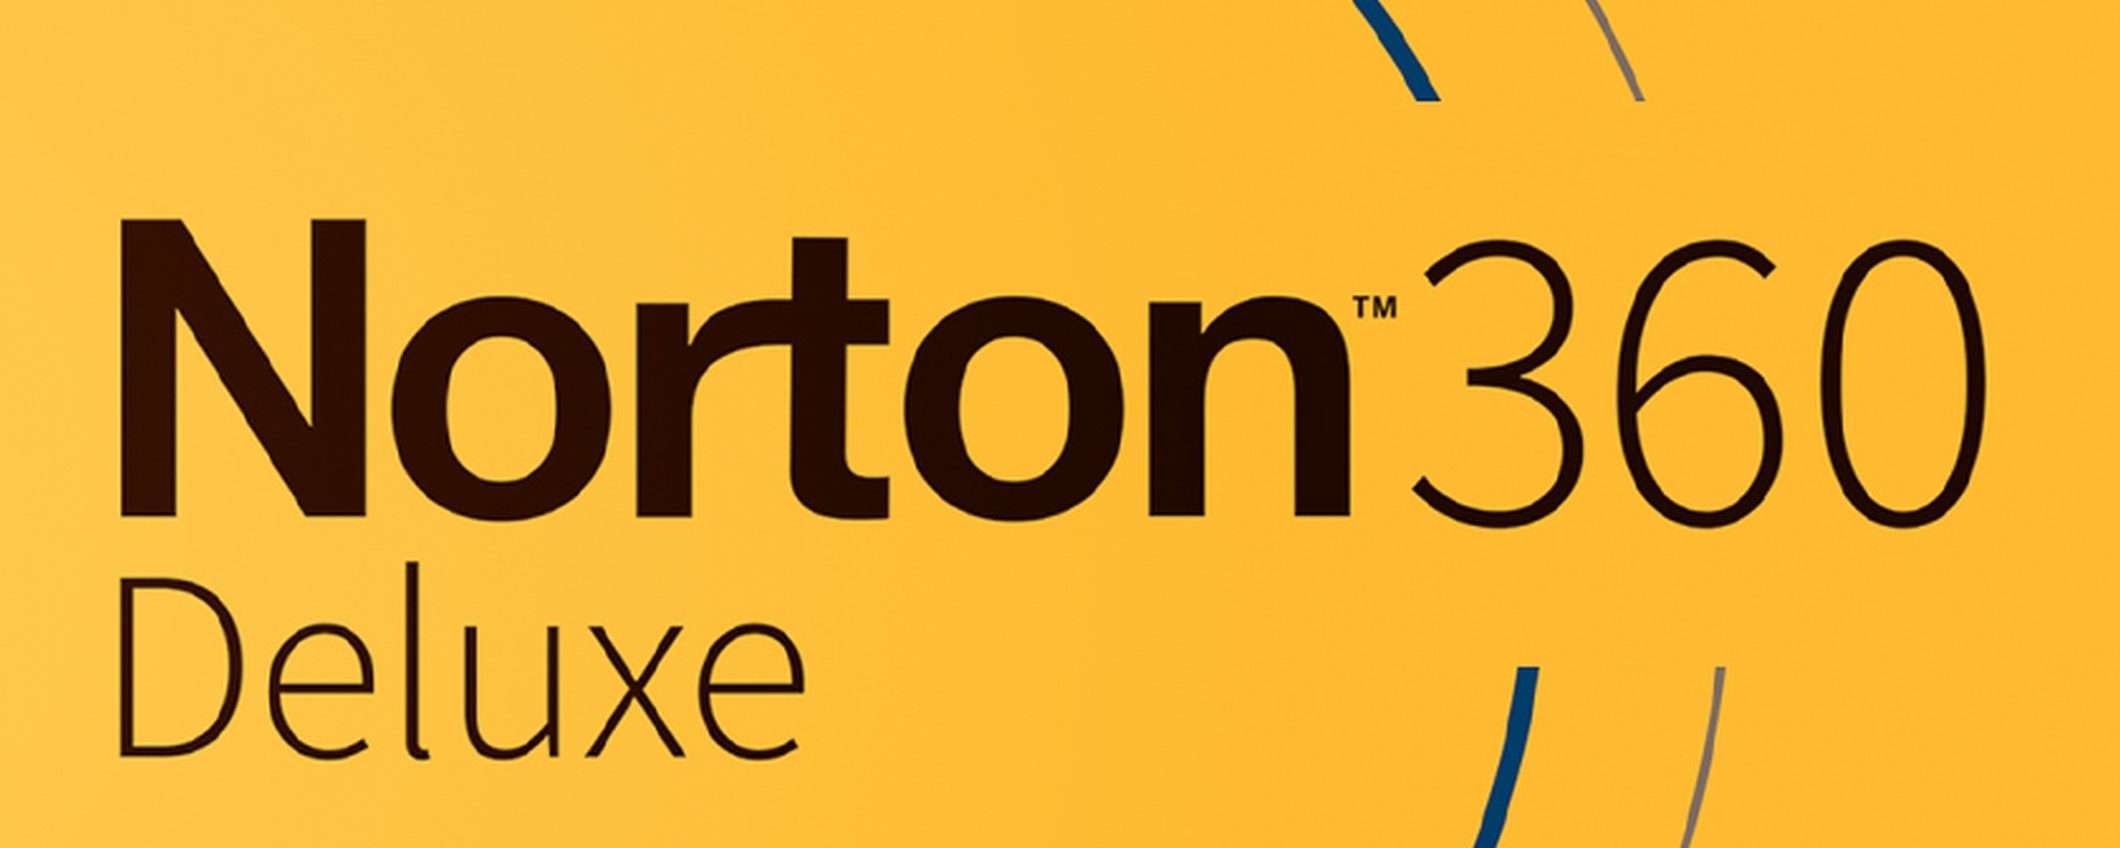 Controlla le attività online dei figli con Norton 360 Deluxe